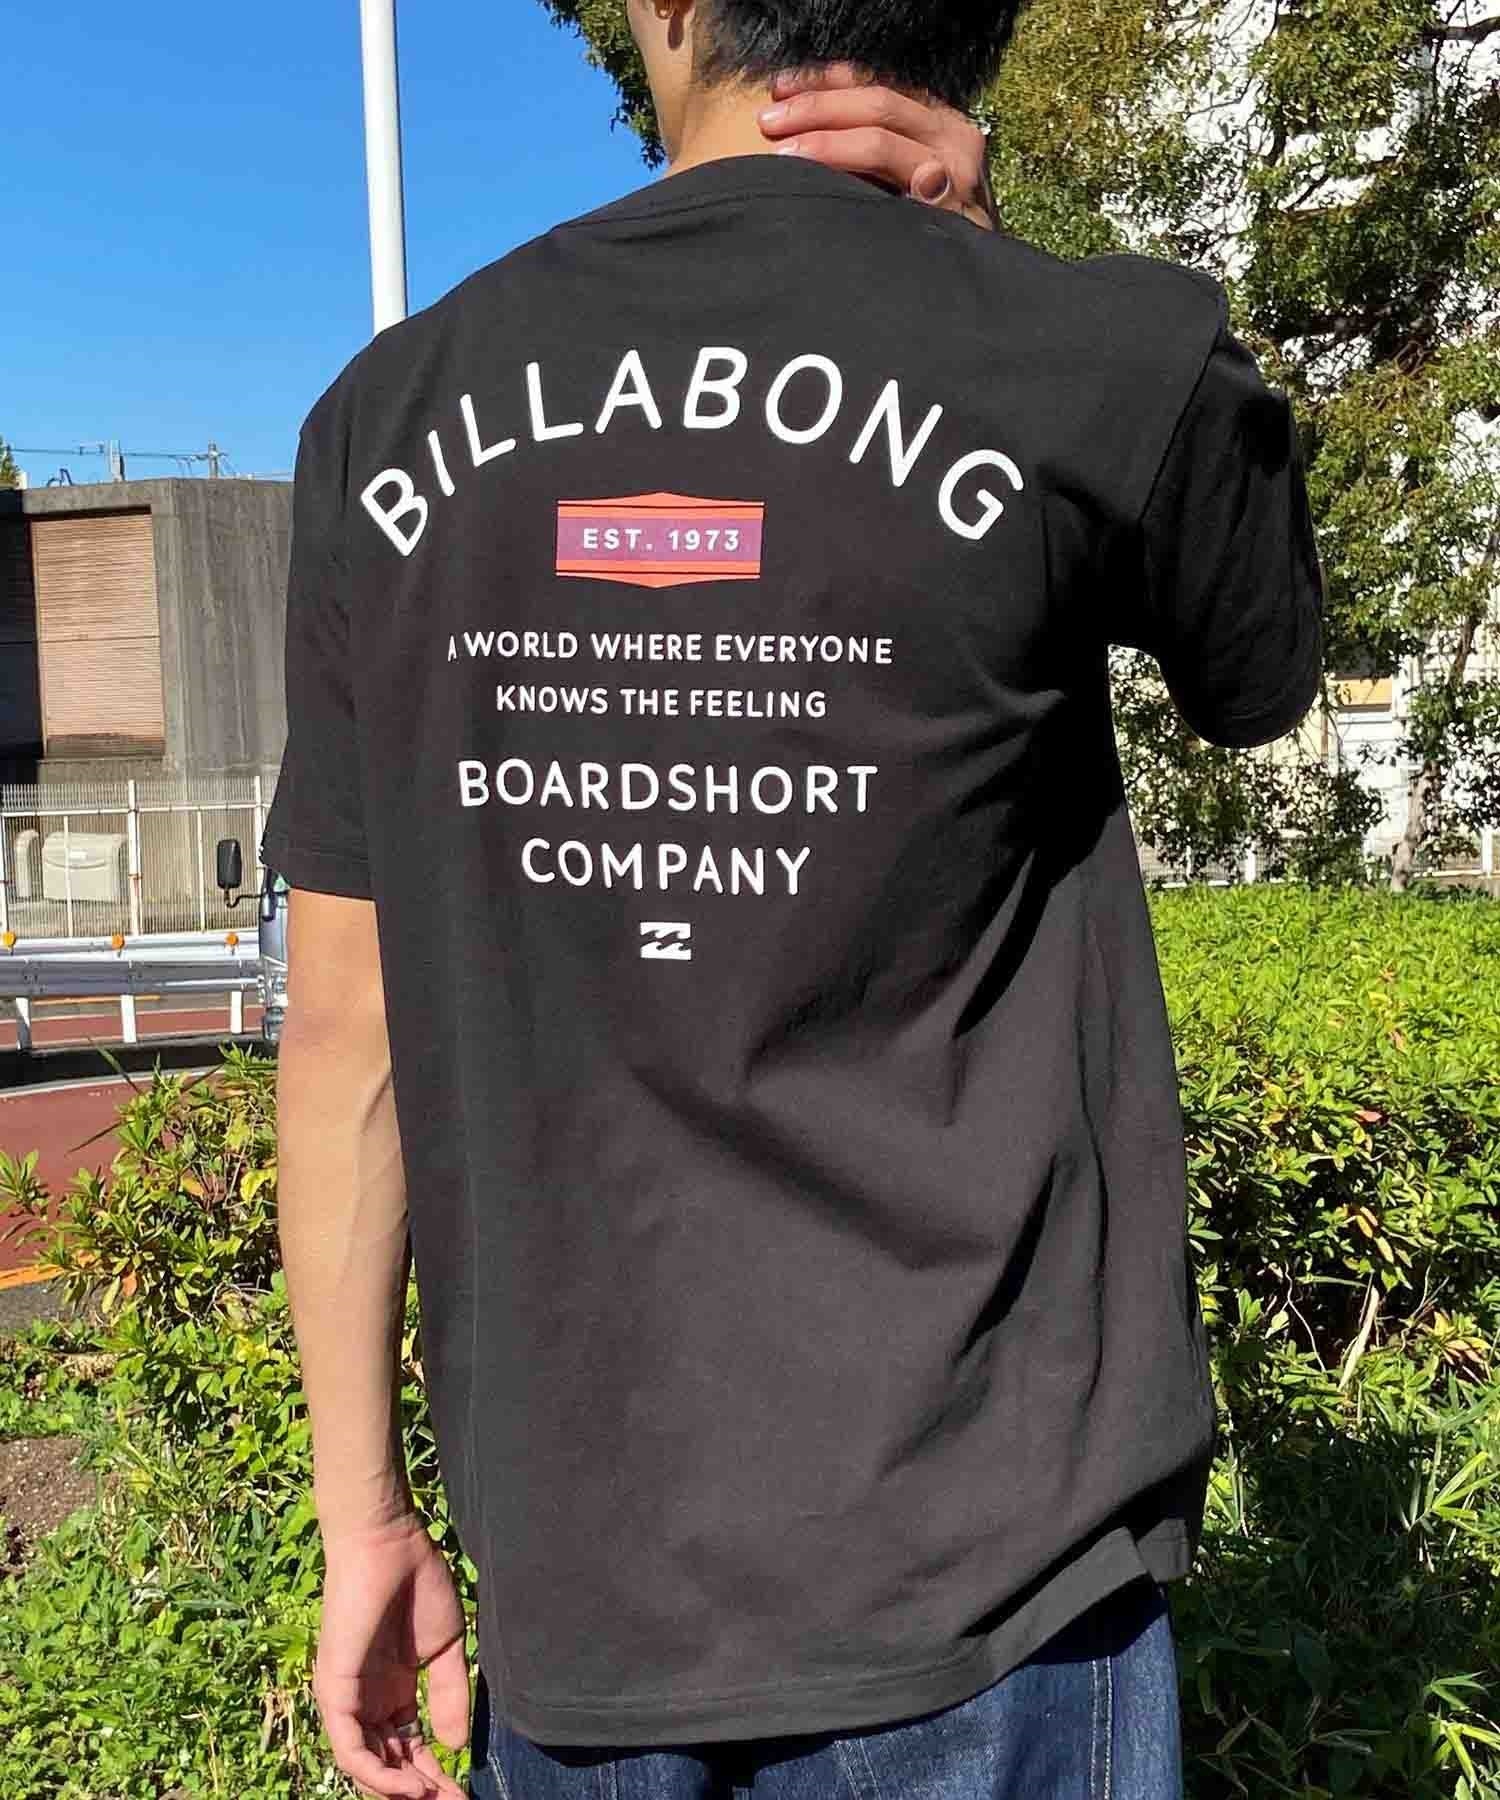 【クーポン対象】BILLABONG ビラボン PEAK Tシャツ 半袖 メンズ バックプリント クルーネック BE011-205(SAG-S)